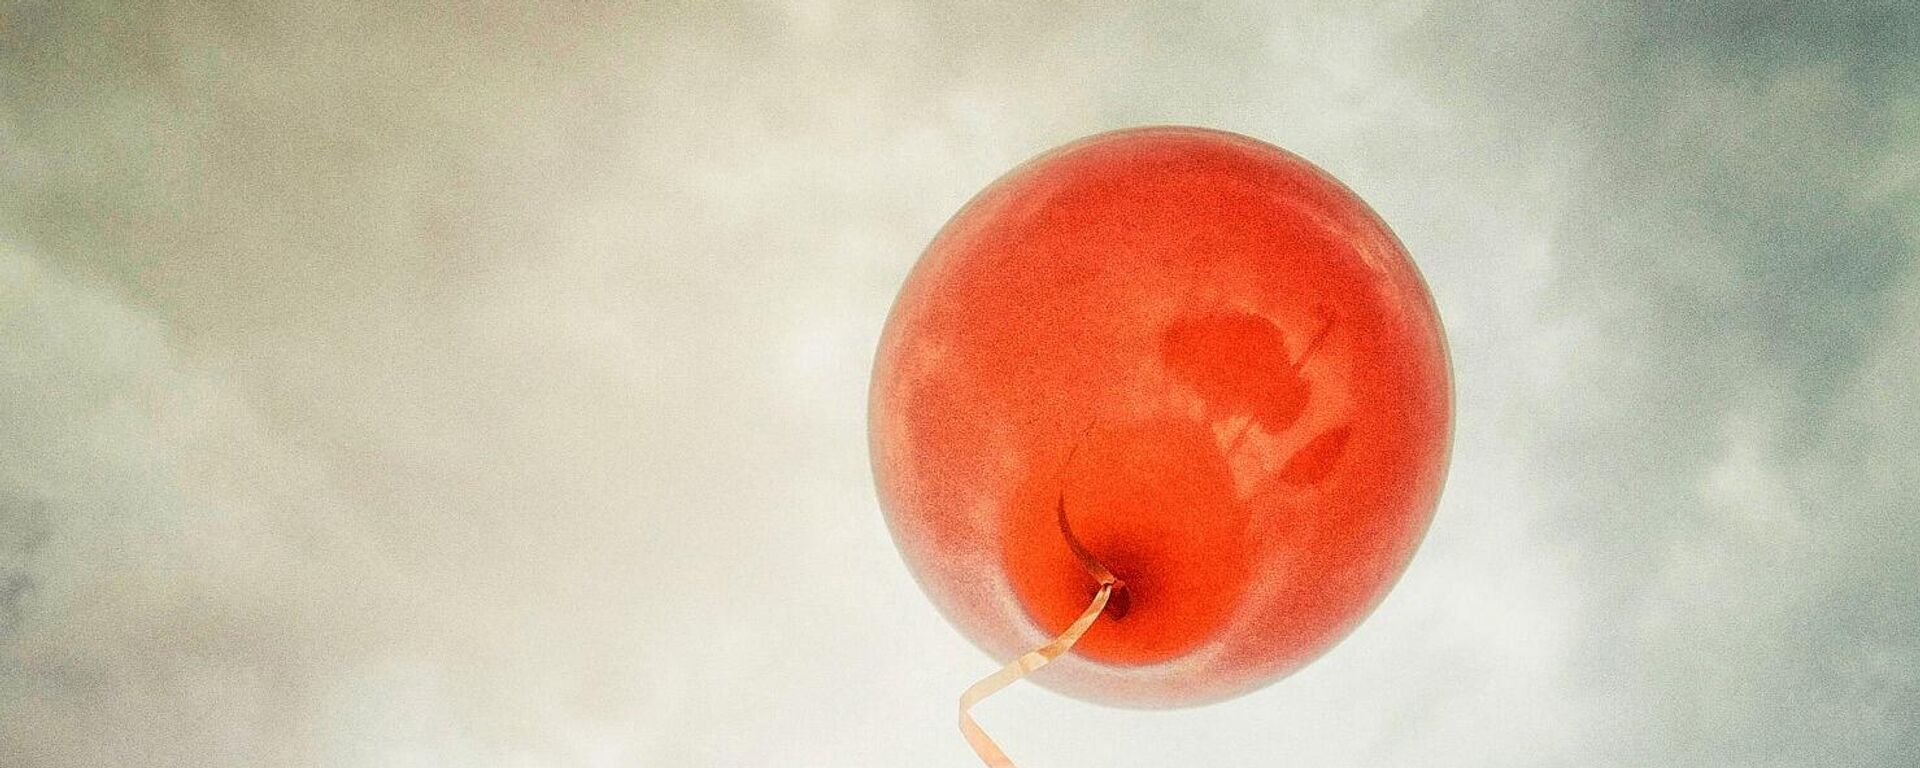 Un regalo de cumpleaños sale flotando en un globo de helio - Sputnik Mundo, 1920, 04.05.2021